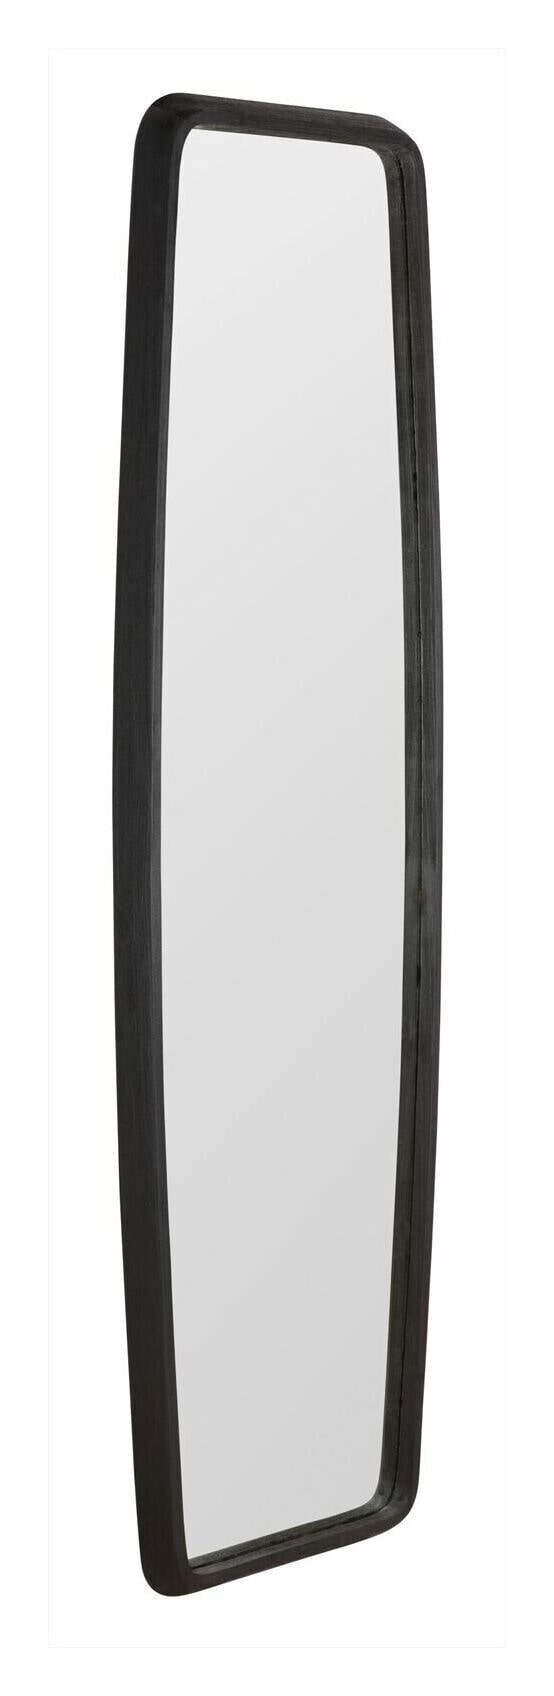 MUST Living Spiegel Morris Hout, 200 x 60cm - Zwart